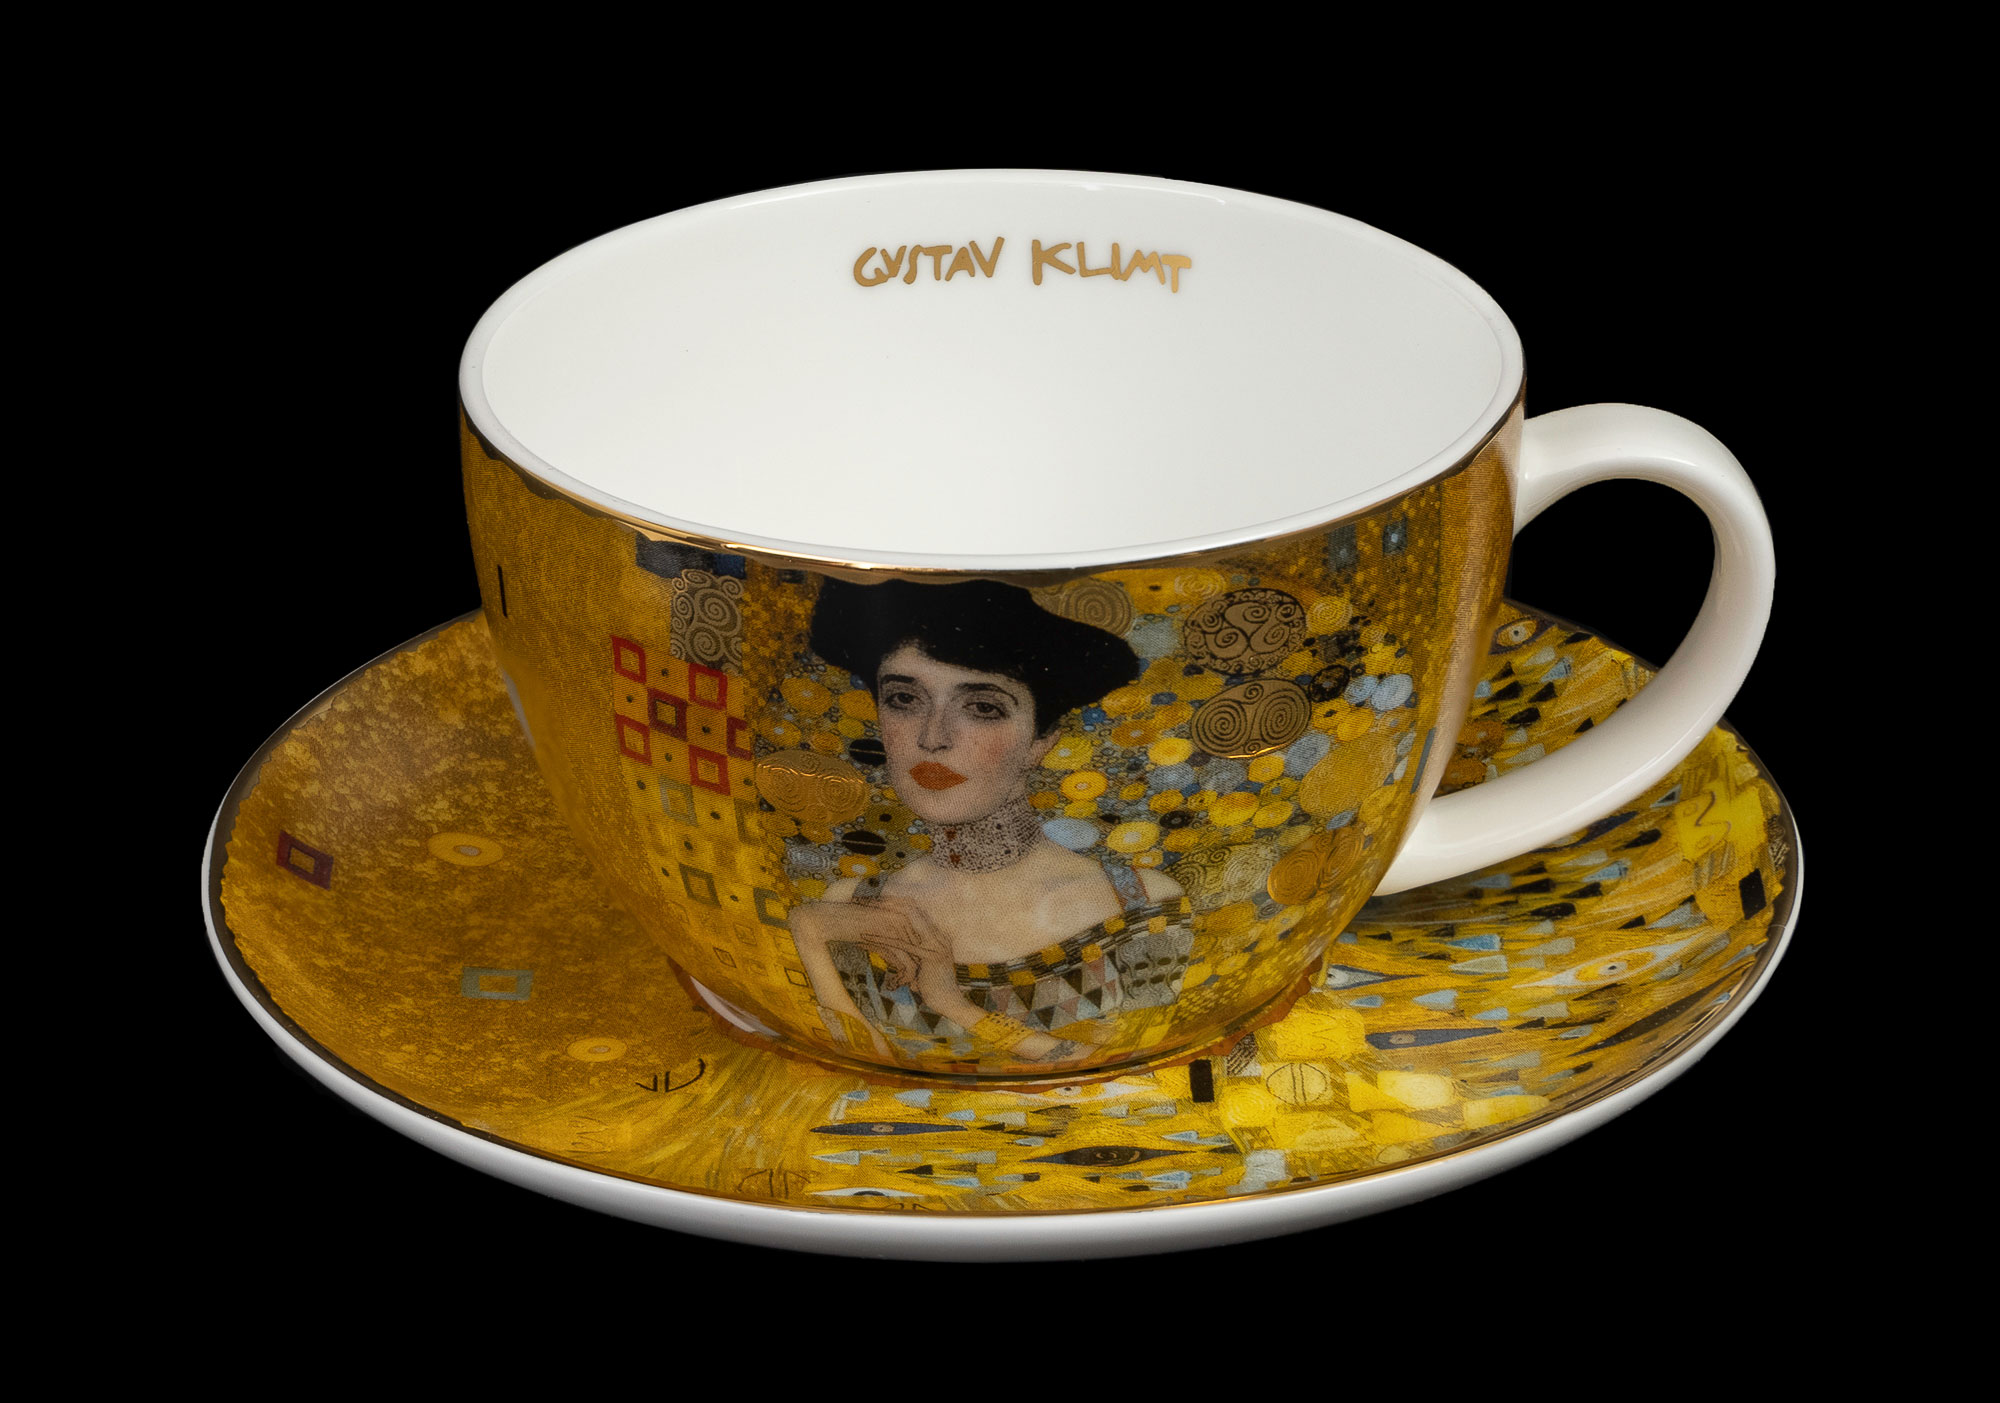 Gustav Klimt teacup and saucer : Adele Bloch Bauer (Goebel)